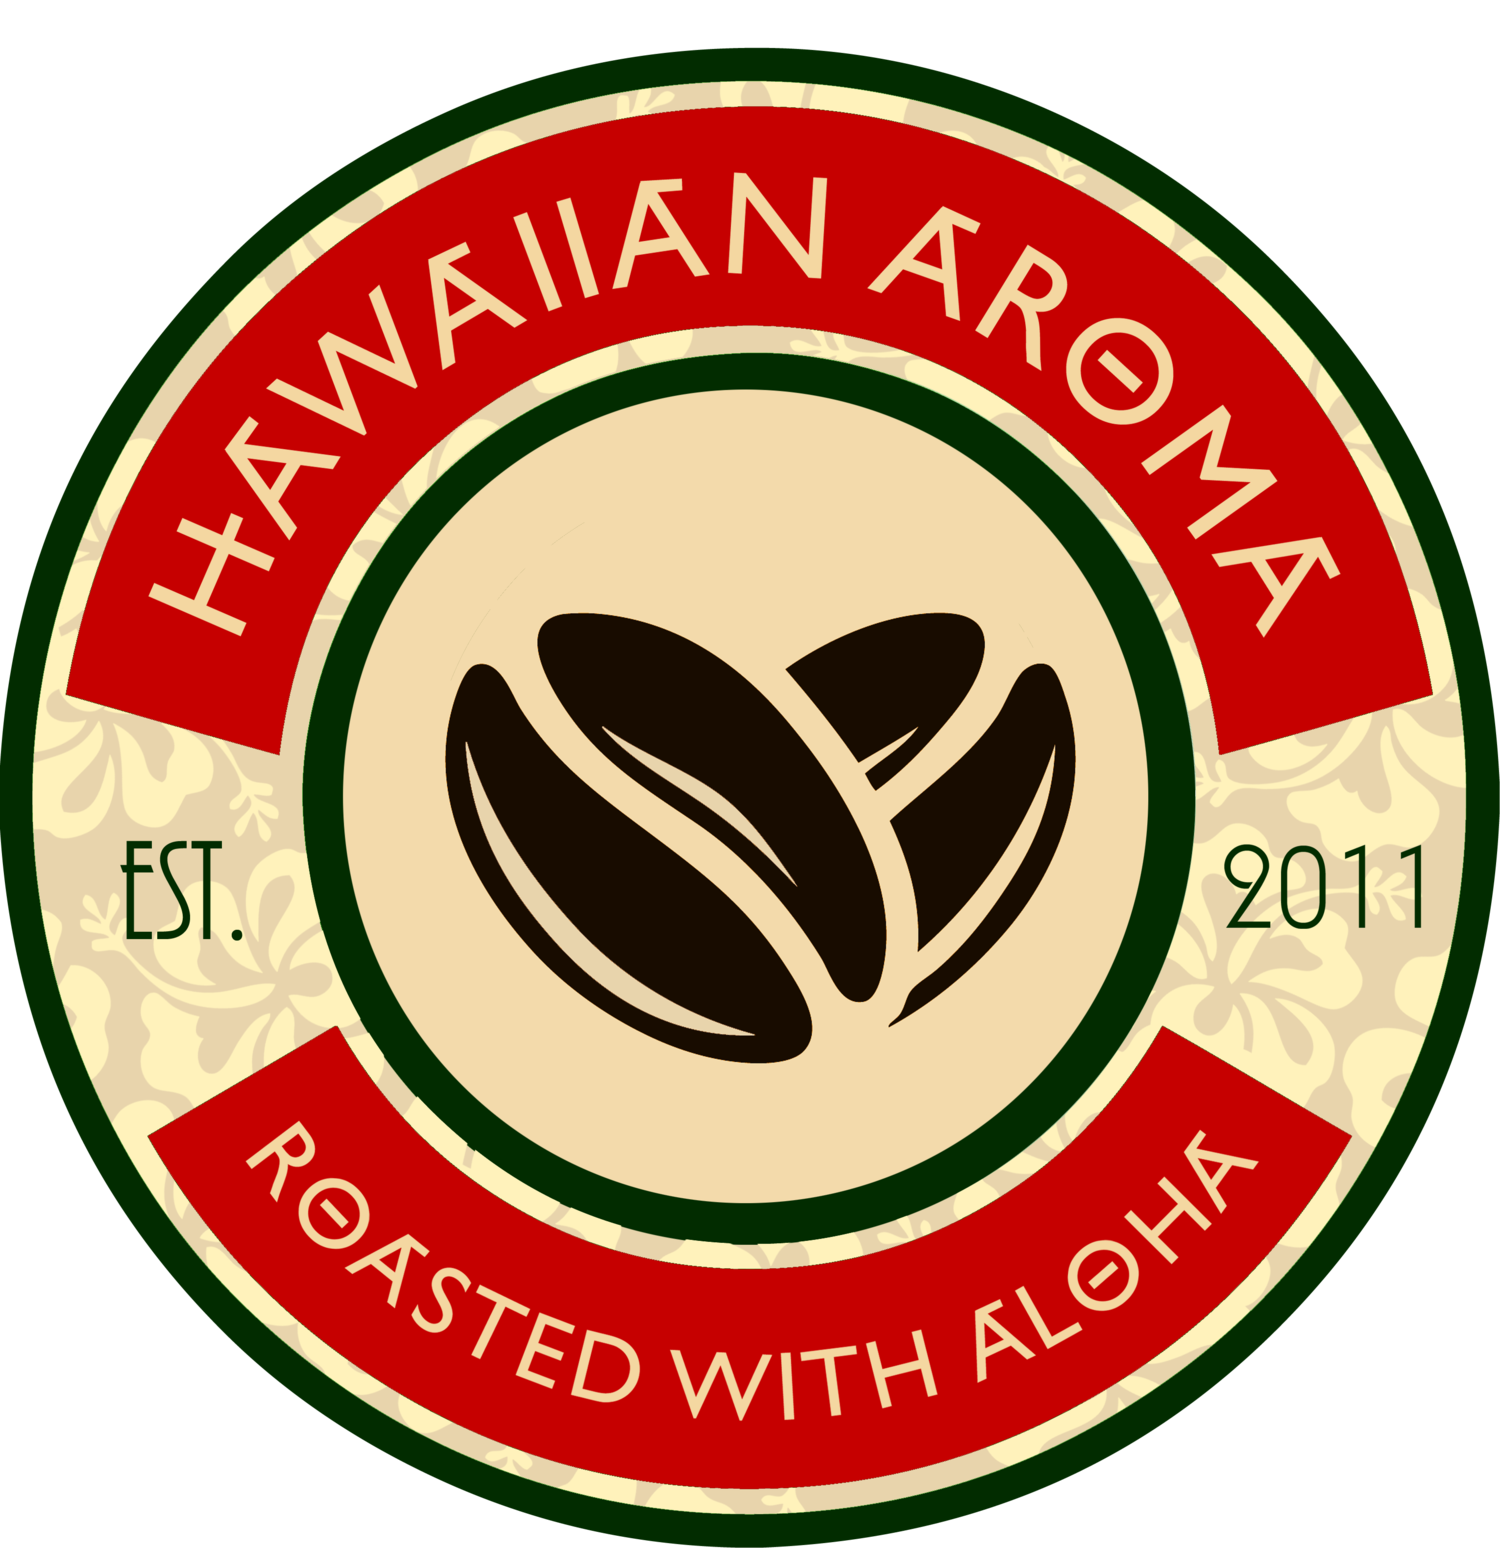 Hawaiian Aroma Caffe